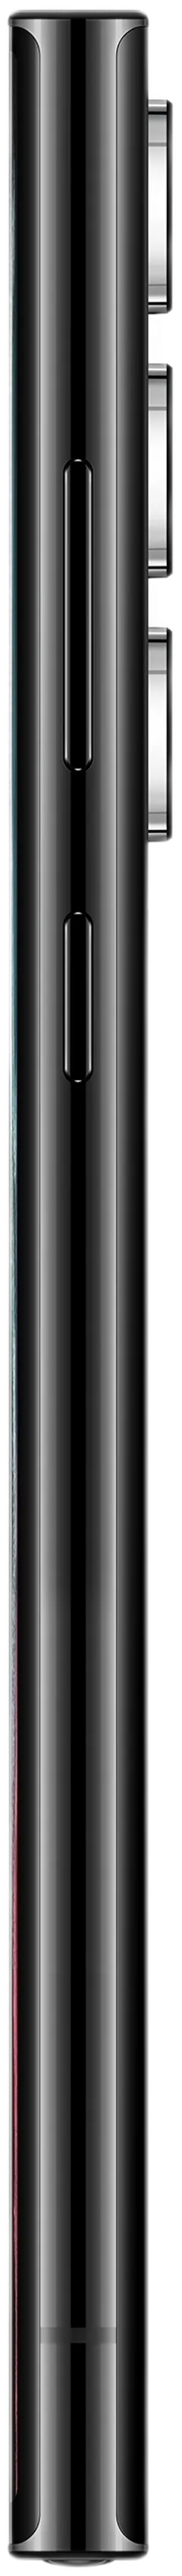 Samsung Galaxy S22 Ultra 5G 128GB musta älypuhelin - 8